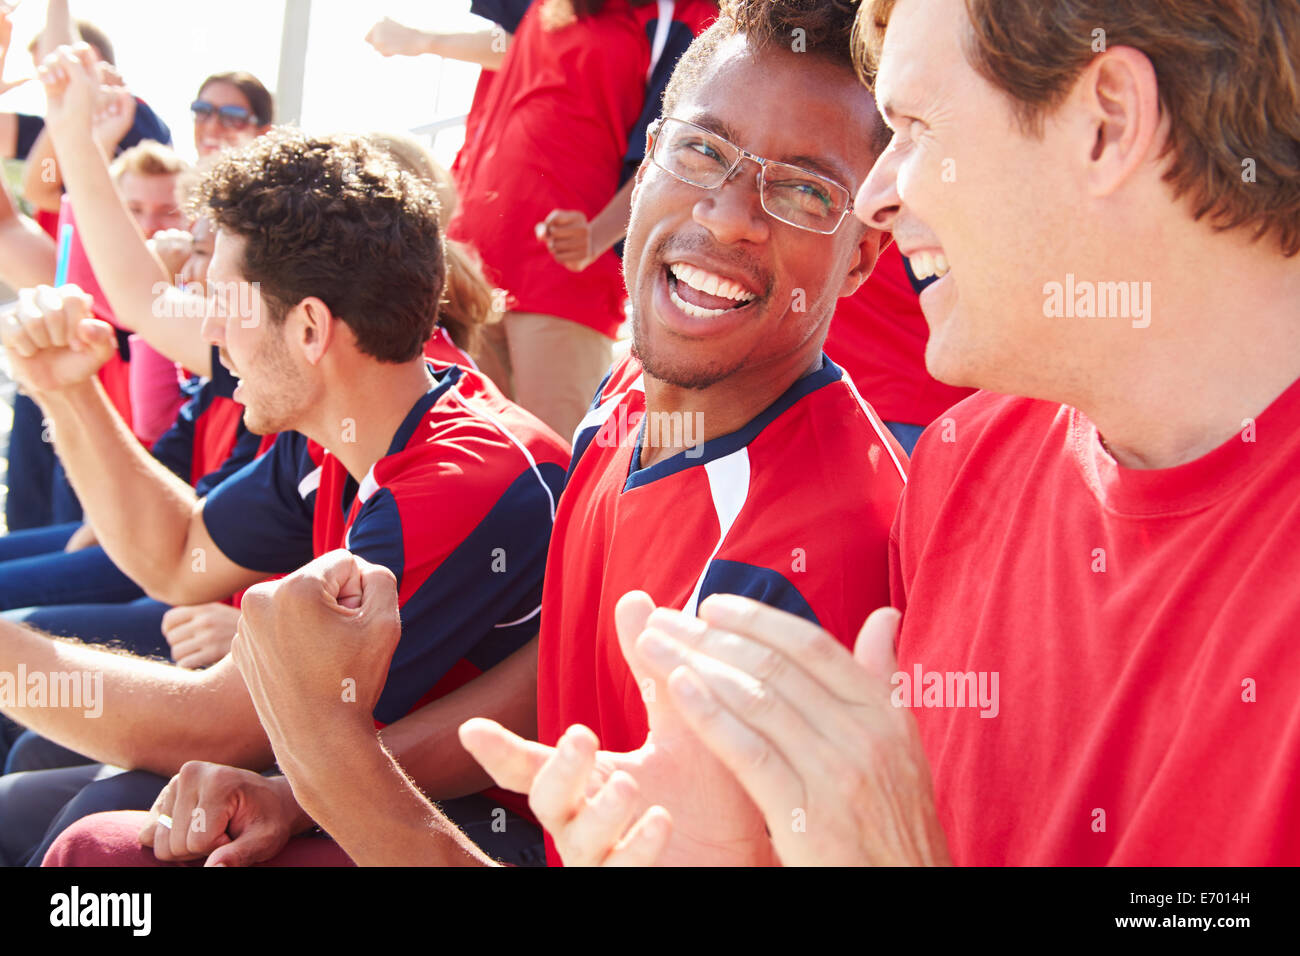 Gli spettatori nei colori della squadra la visione di eventi sportivi Foto Stock